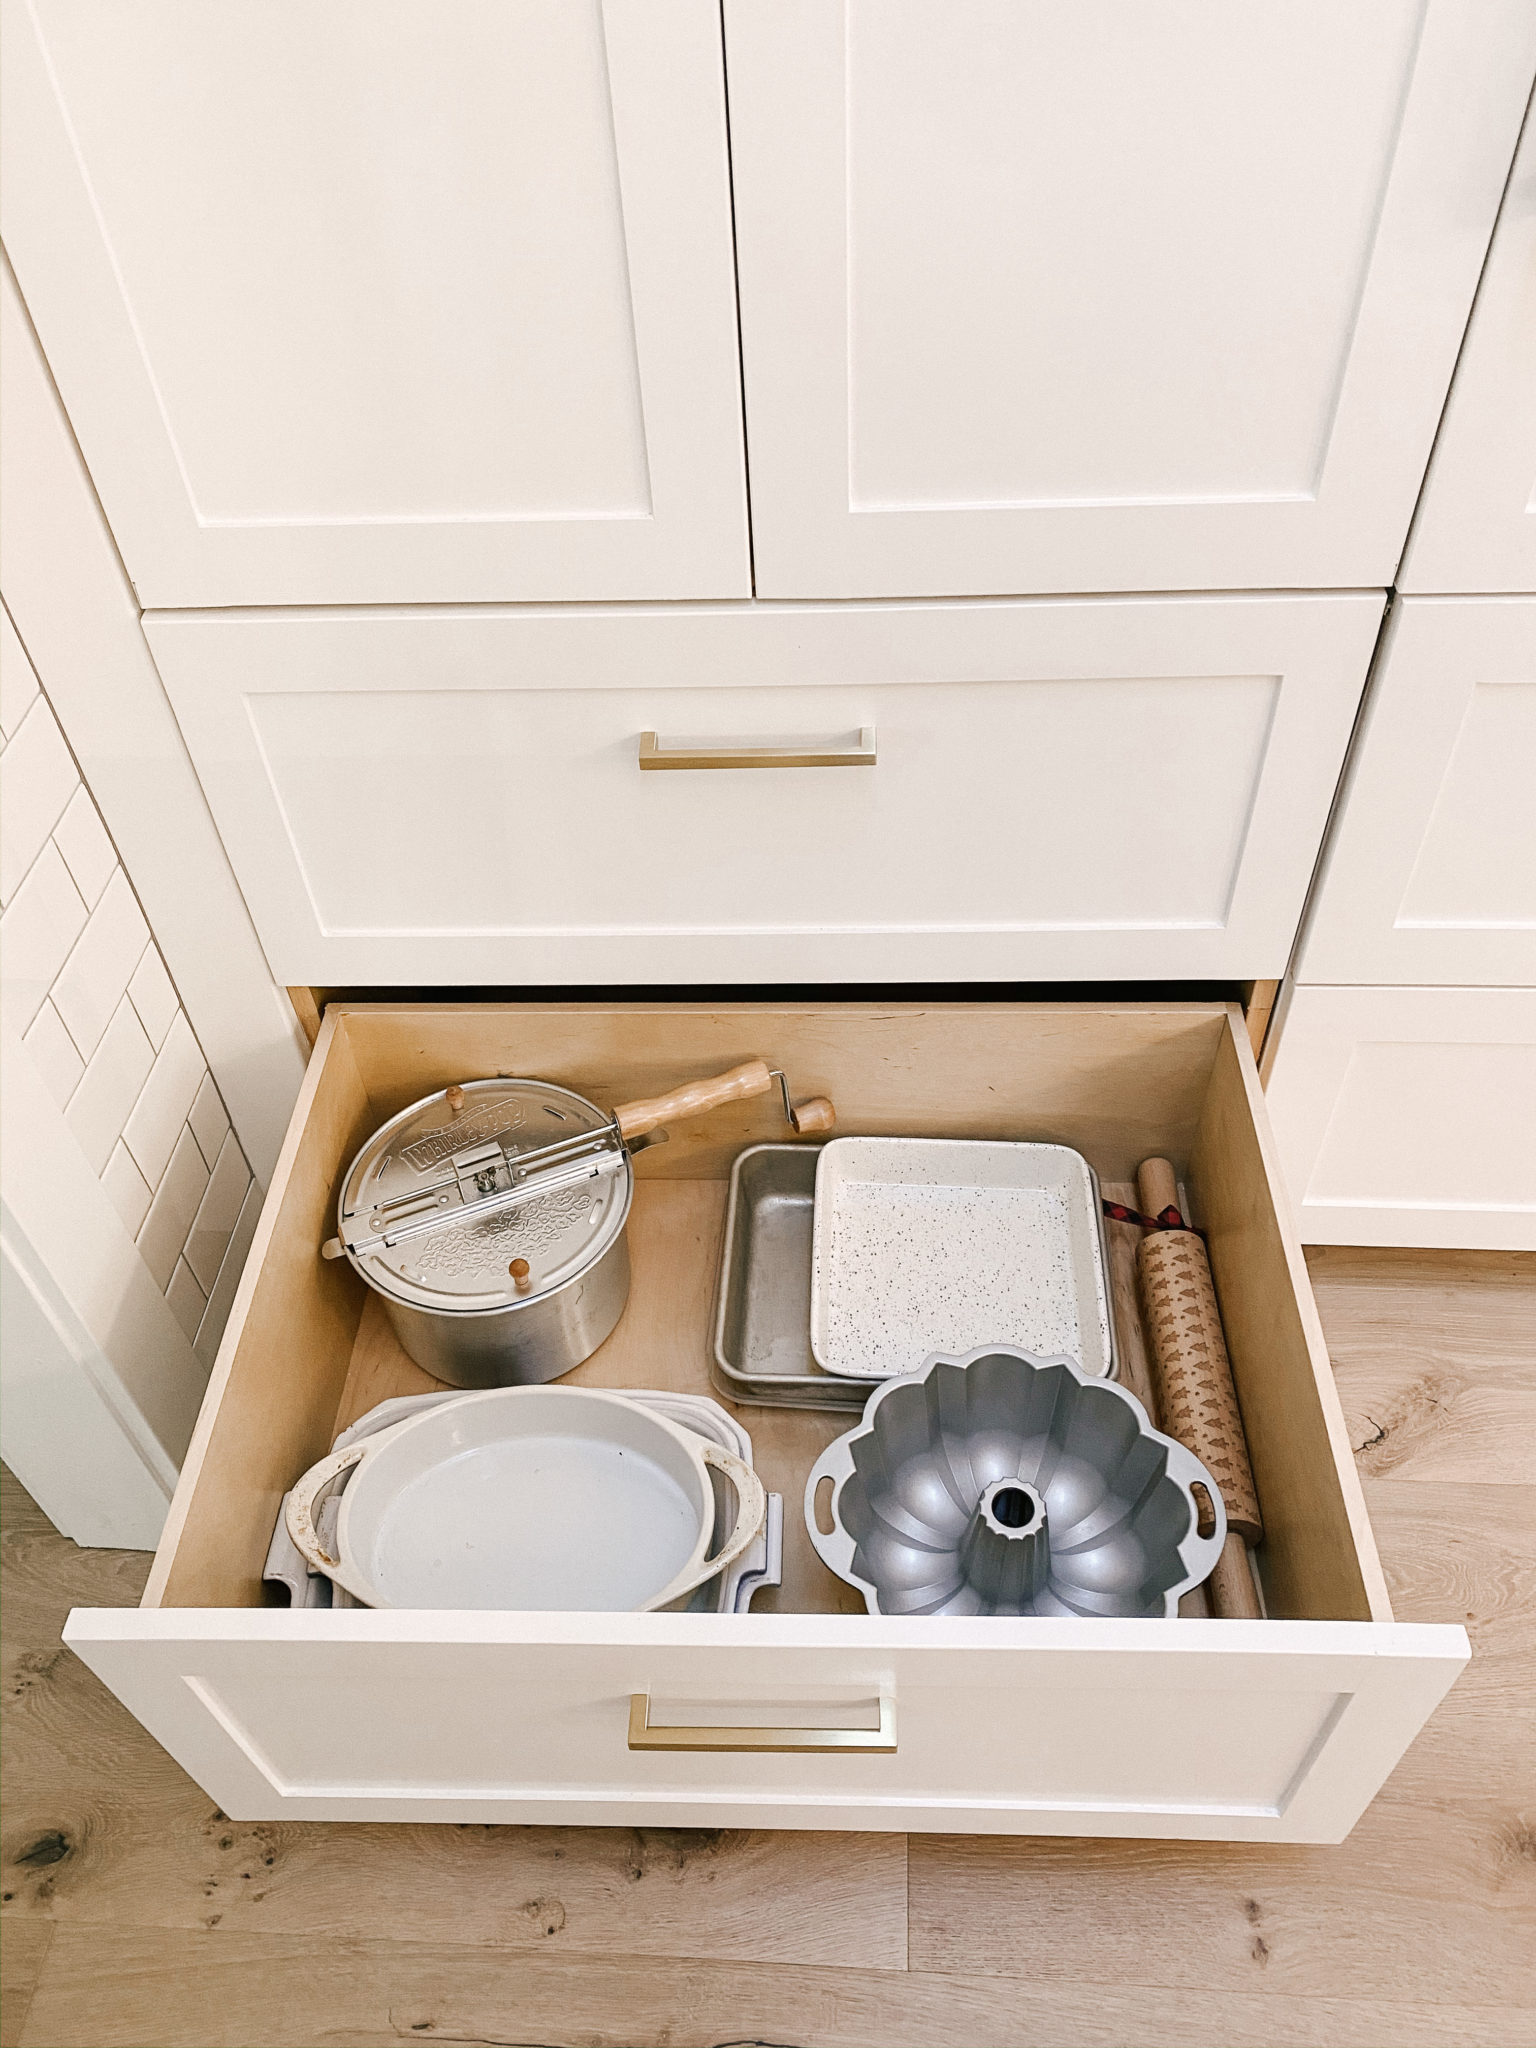 12 Kitchen Cabinet Organization Ideas - How to Organize Kitchen Cabinets